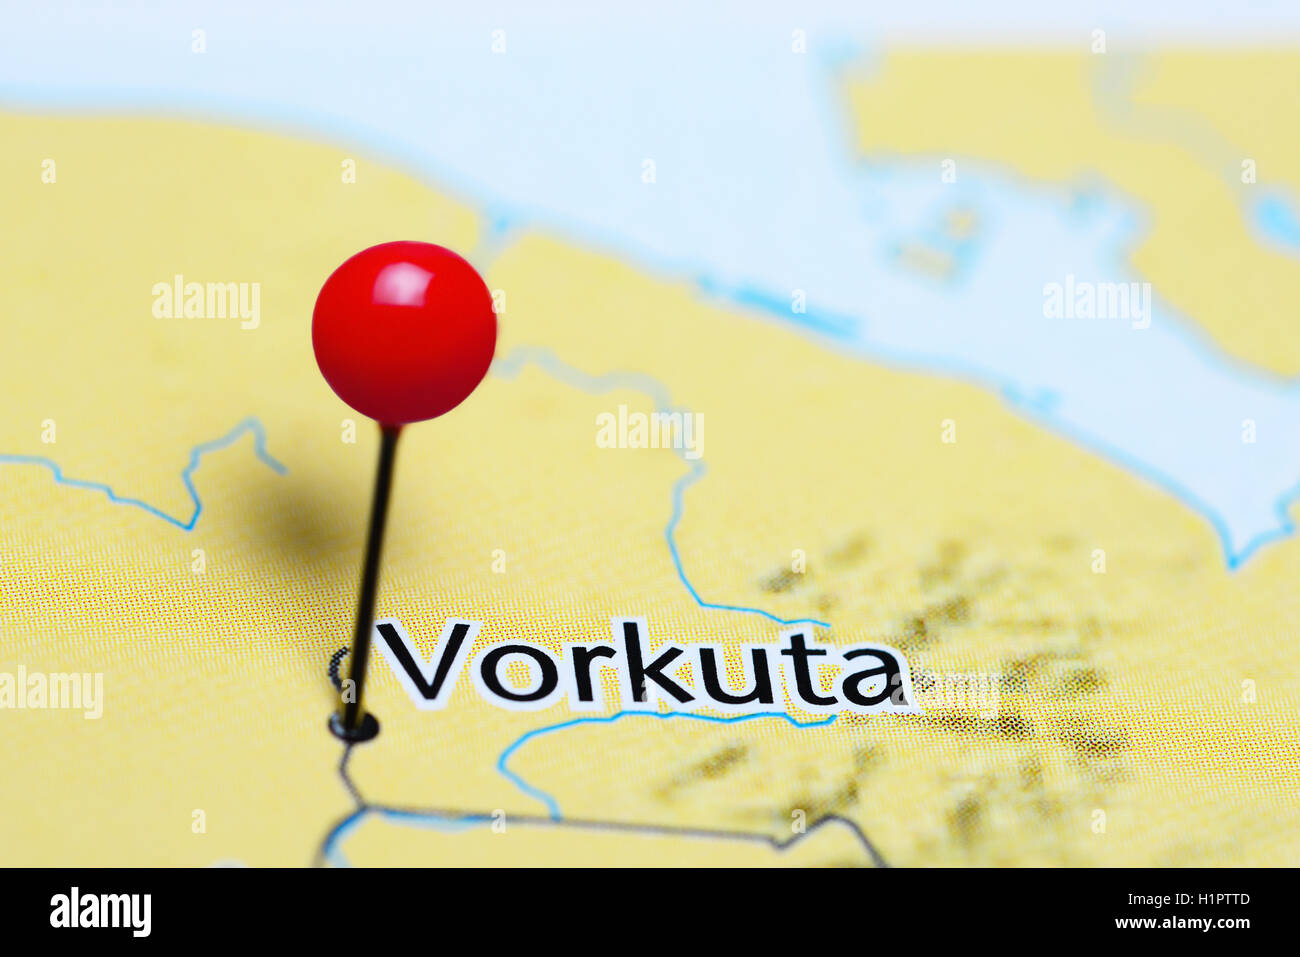 Vorkuta épinglée sur une carte de la Russie Banque D'Images